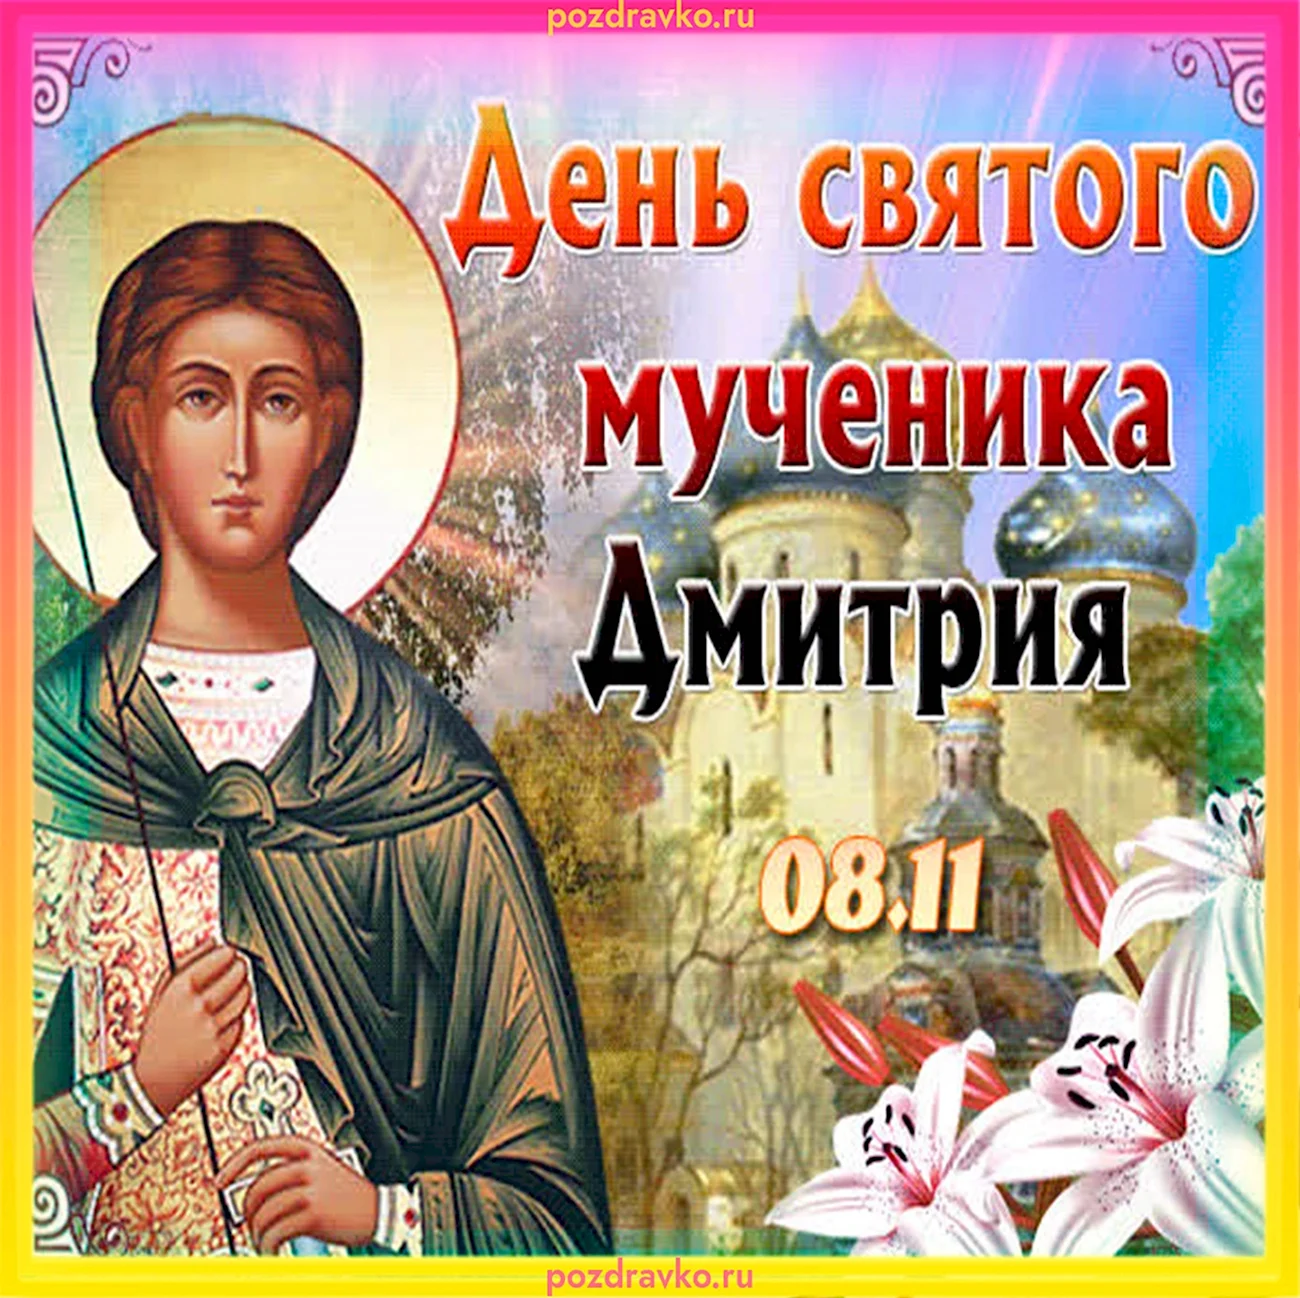 8 Ноября день ангела Дмитрия. Поздравление